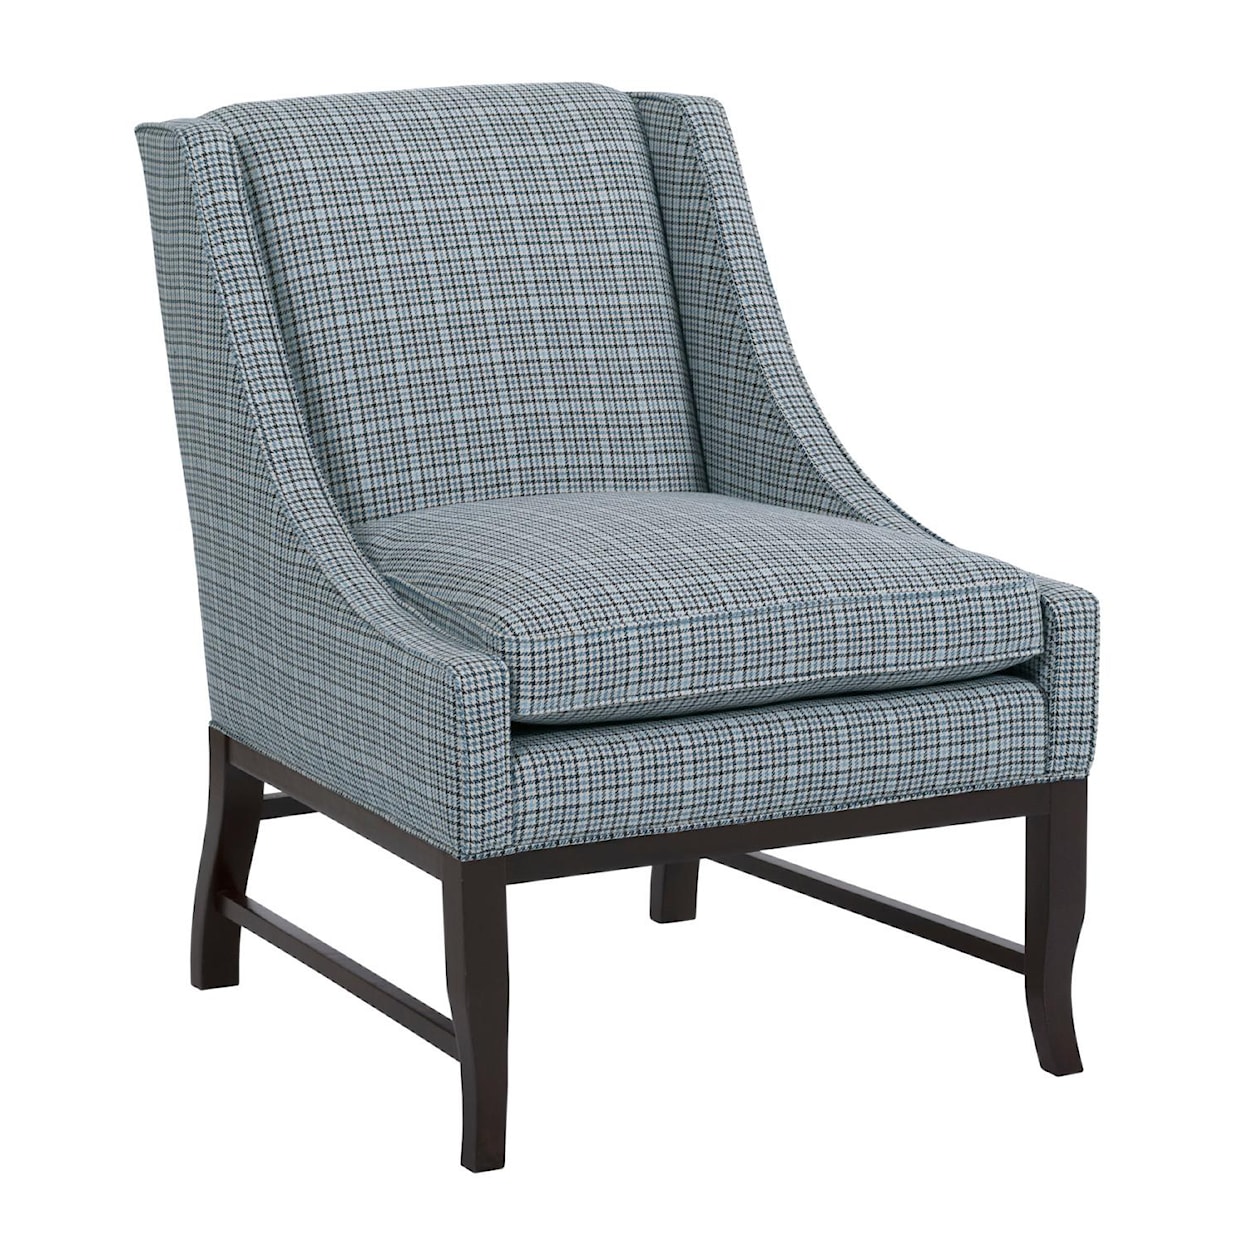 Kincaid Furniture Accent Chairs Ann Arbor Chair